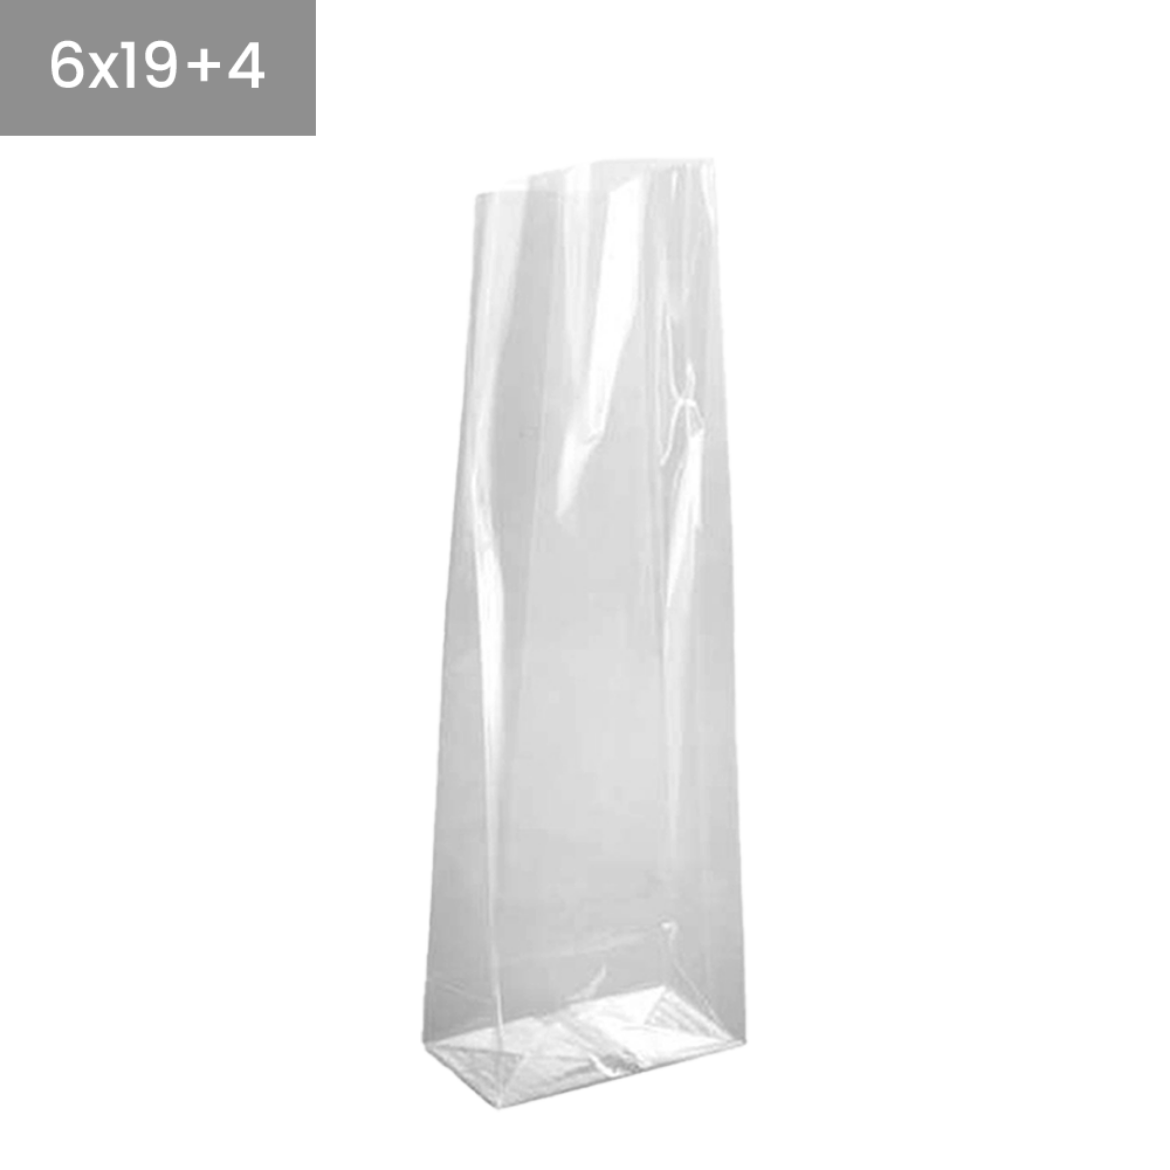 Bolsas de plástico transparentes base cuadrada 6x19+4